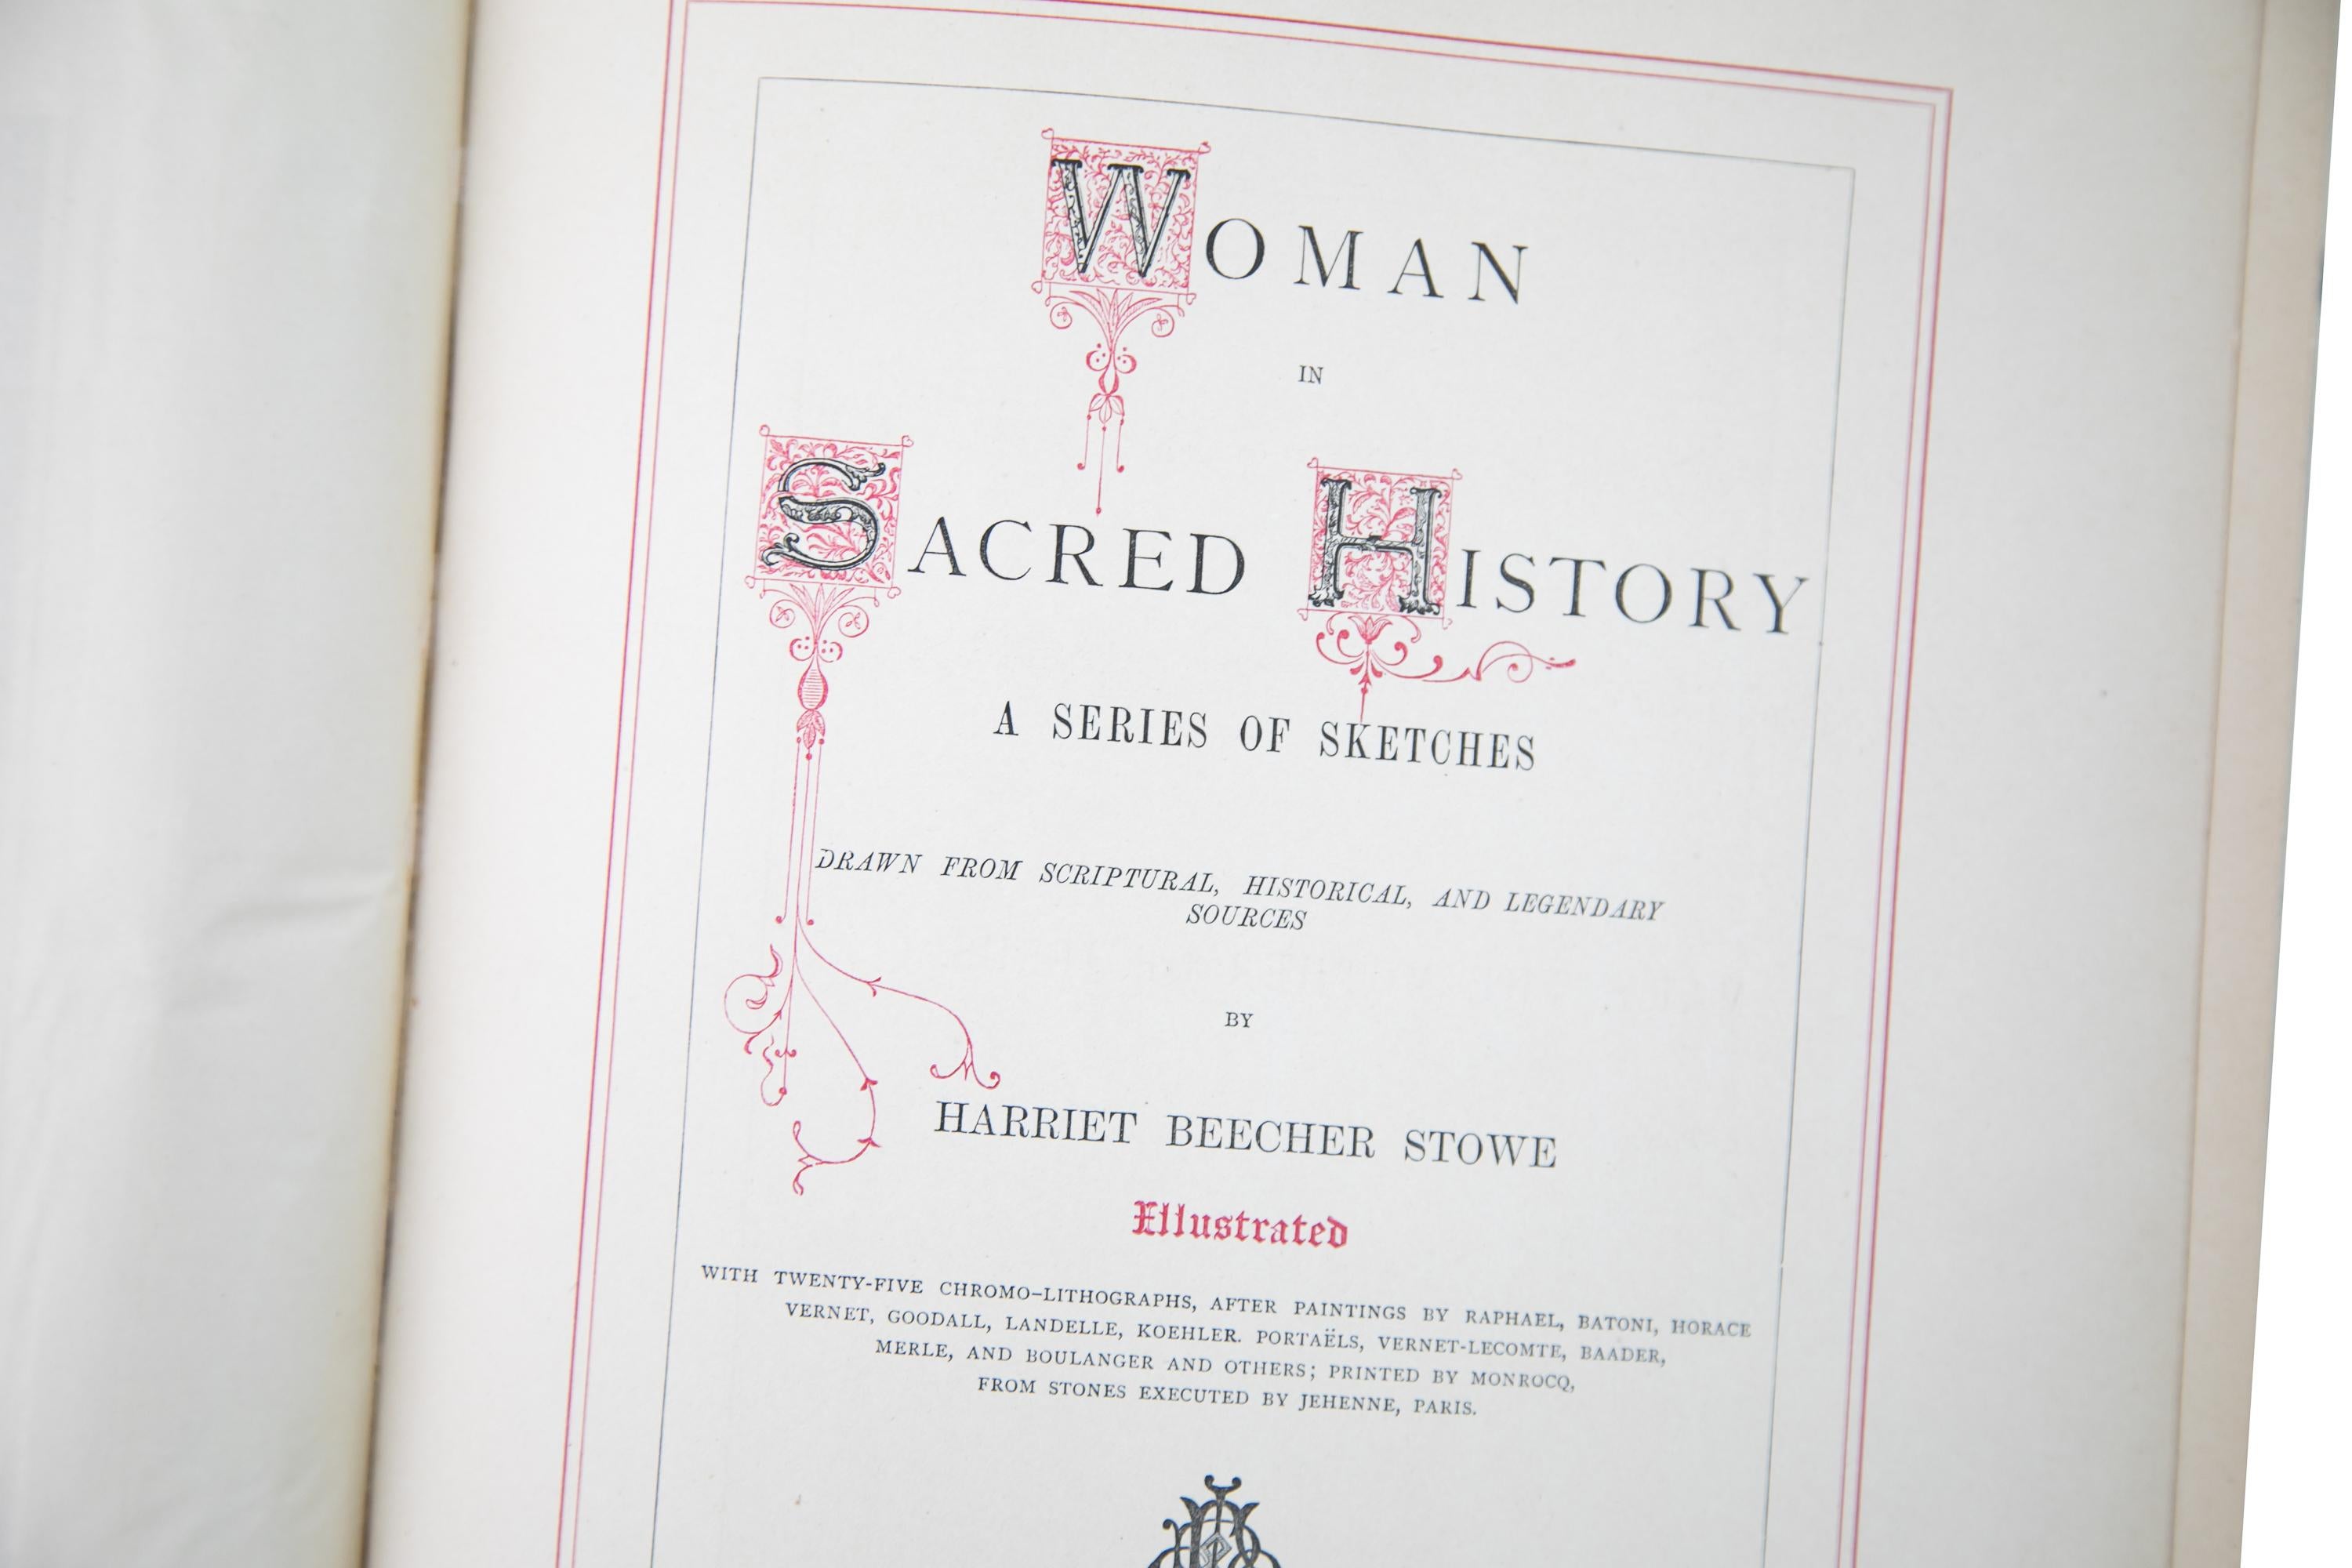 American 1 Volume. Harriet Beecher Stowe, Women in Sacred History.